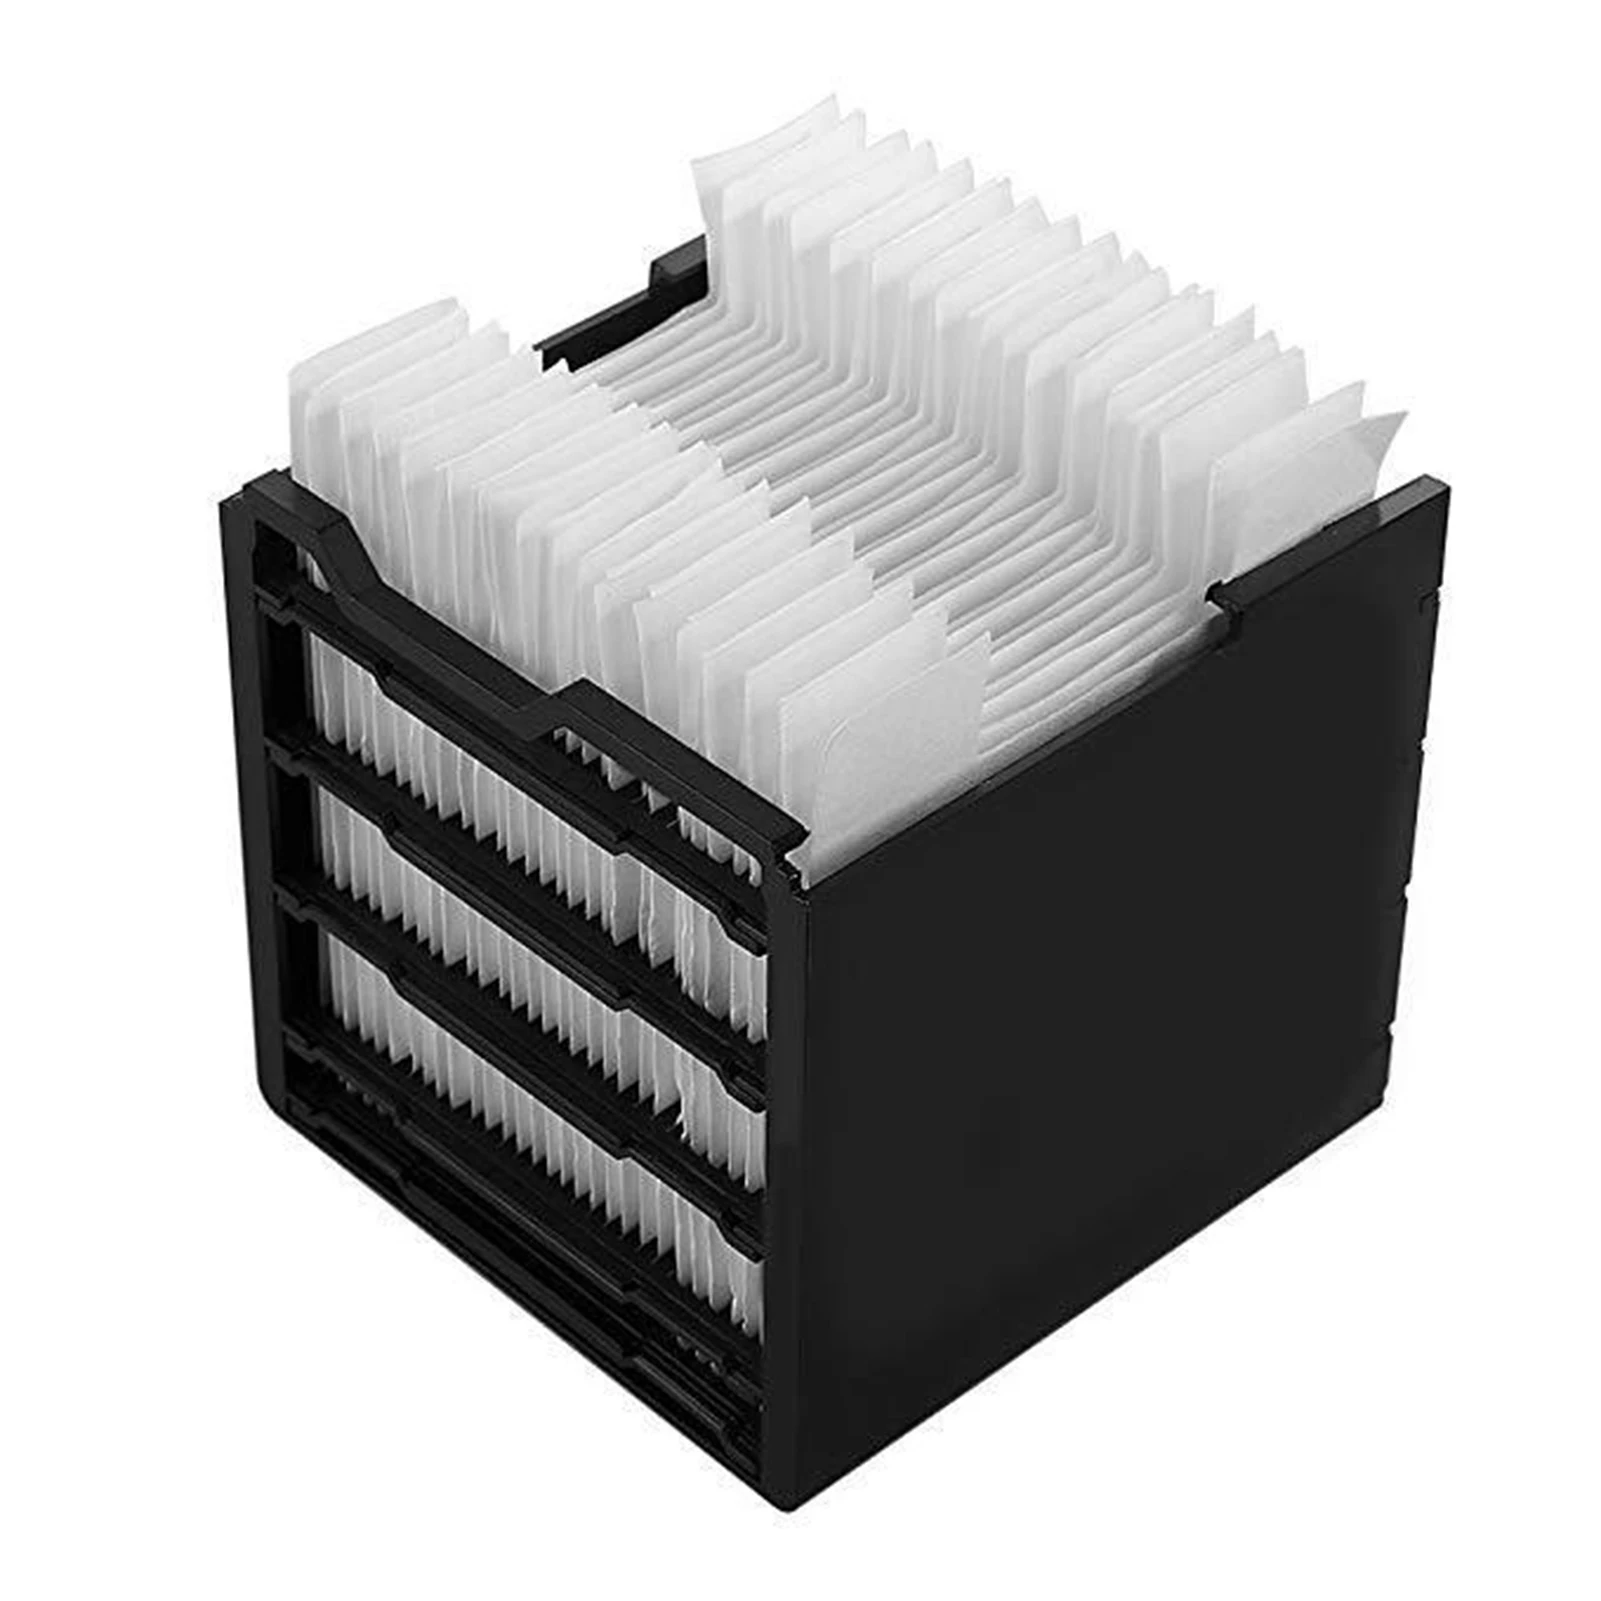 

Сменный фильтр для воздушного ультра испарительного охладителя кондиционера вентилятора воздушного охладителя фильтры для легкой устано...